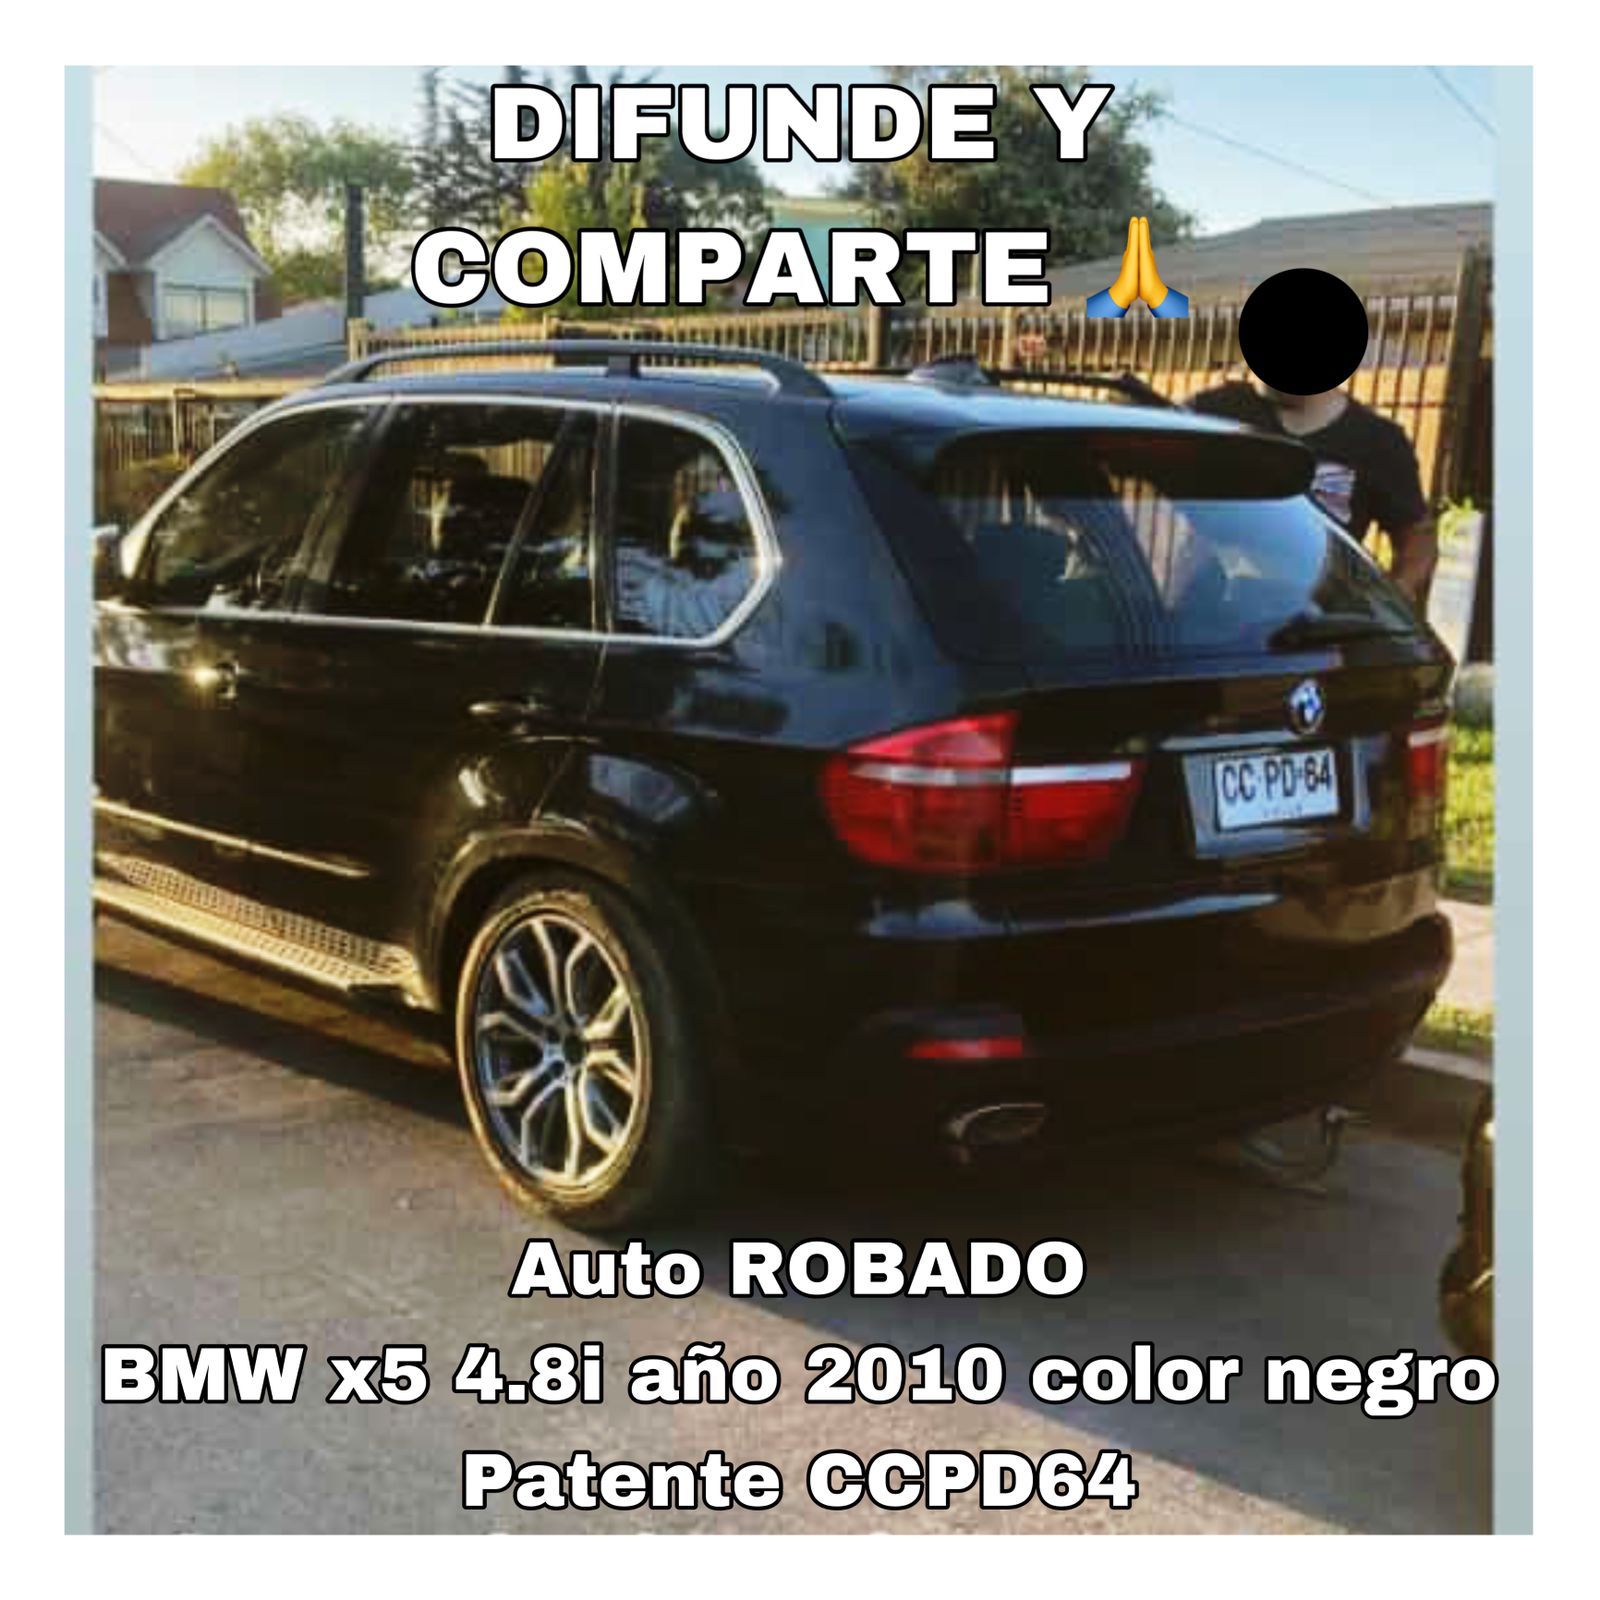 Uno de los autos es un BMW x5 4.8i modelo 2010, color negro,  placa patente CCPD64